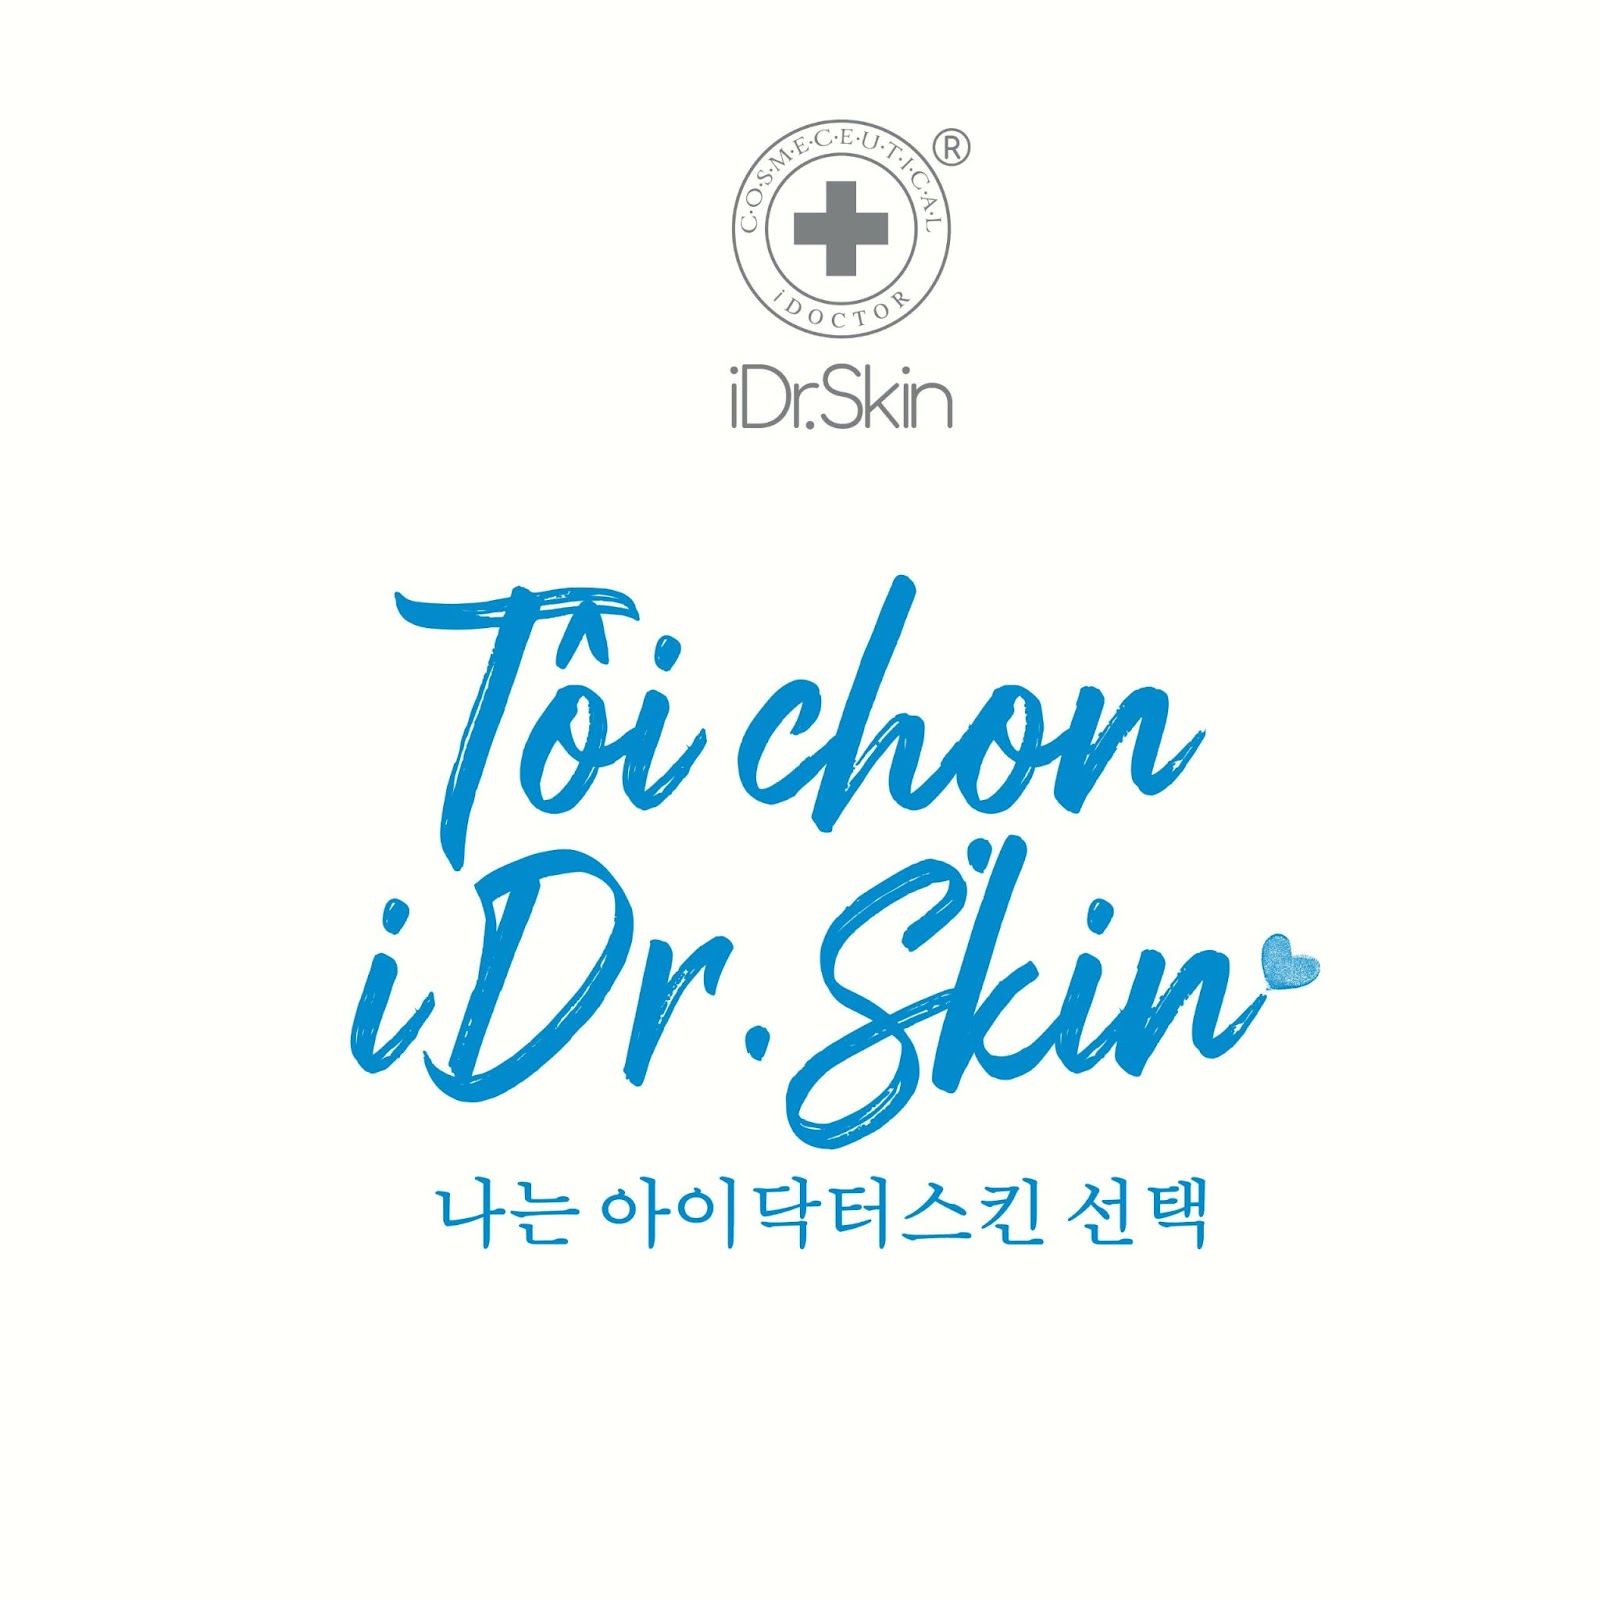 iDr.Skin Hàn Quốc công bố logo thương hiệu đã được bảo hộ, khẳng định vị thế trên thị trường mỹ phẩm - 4